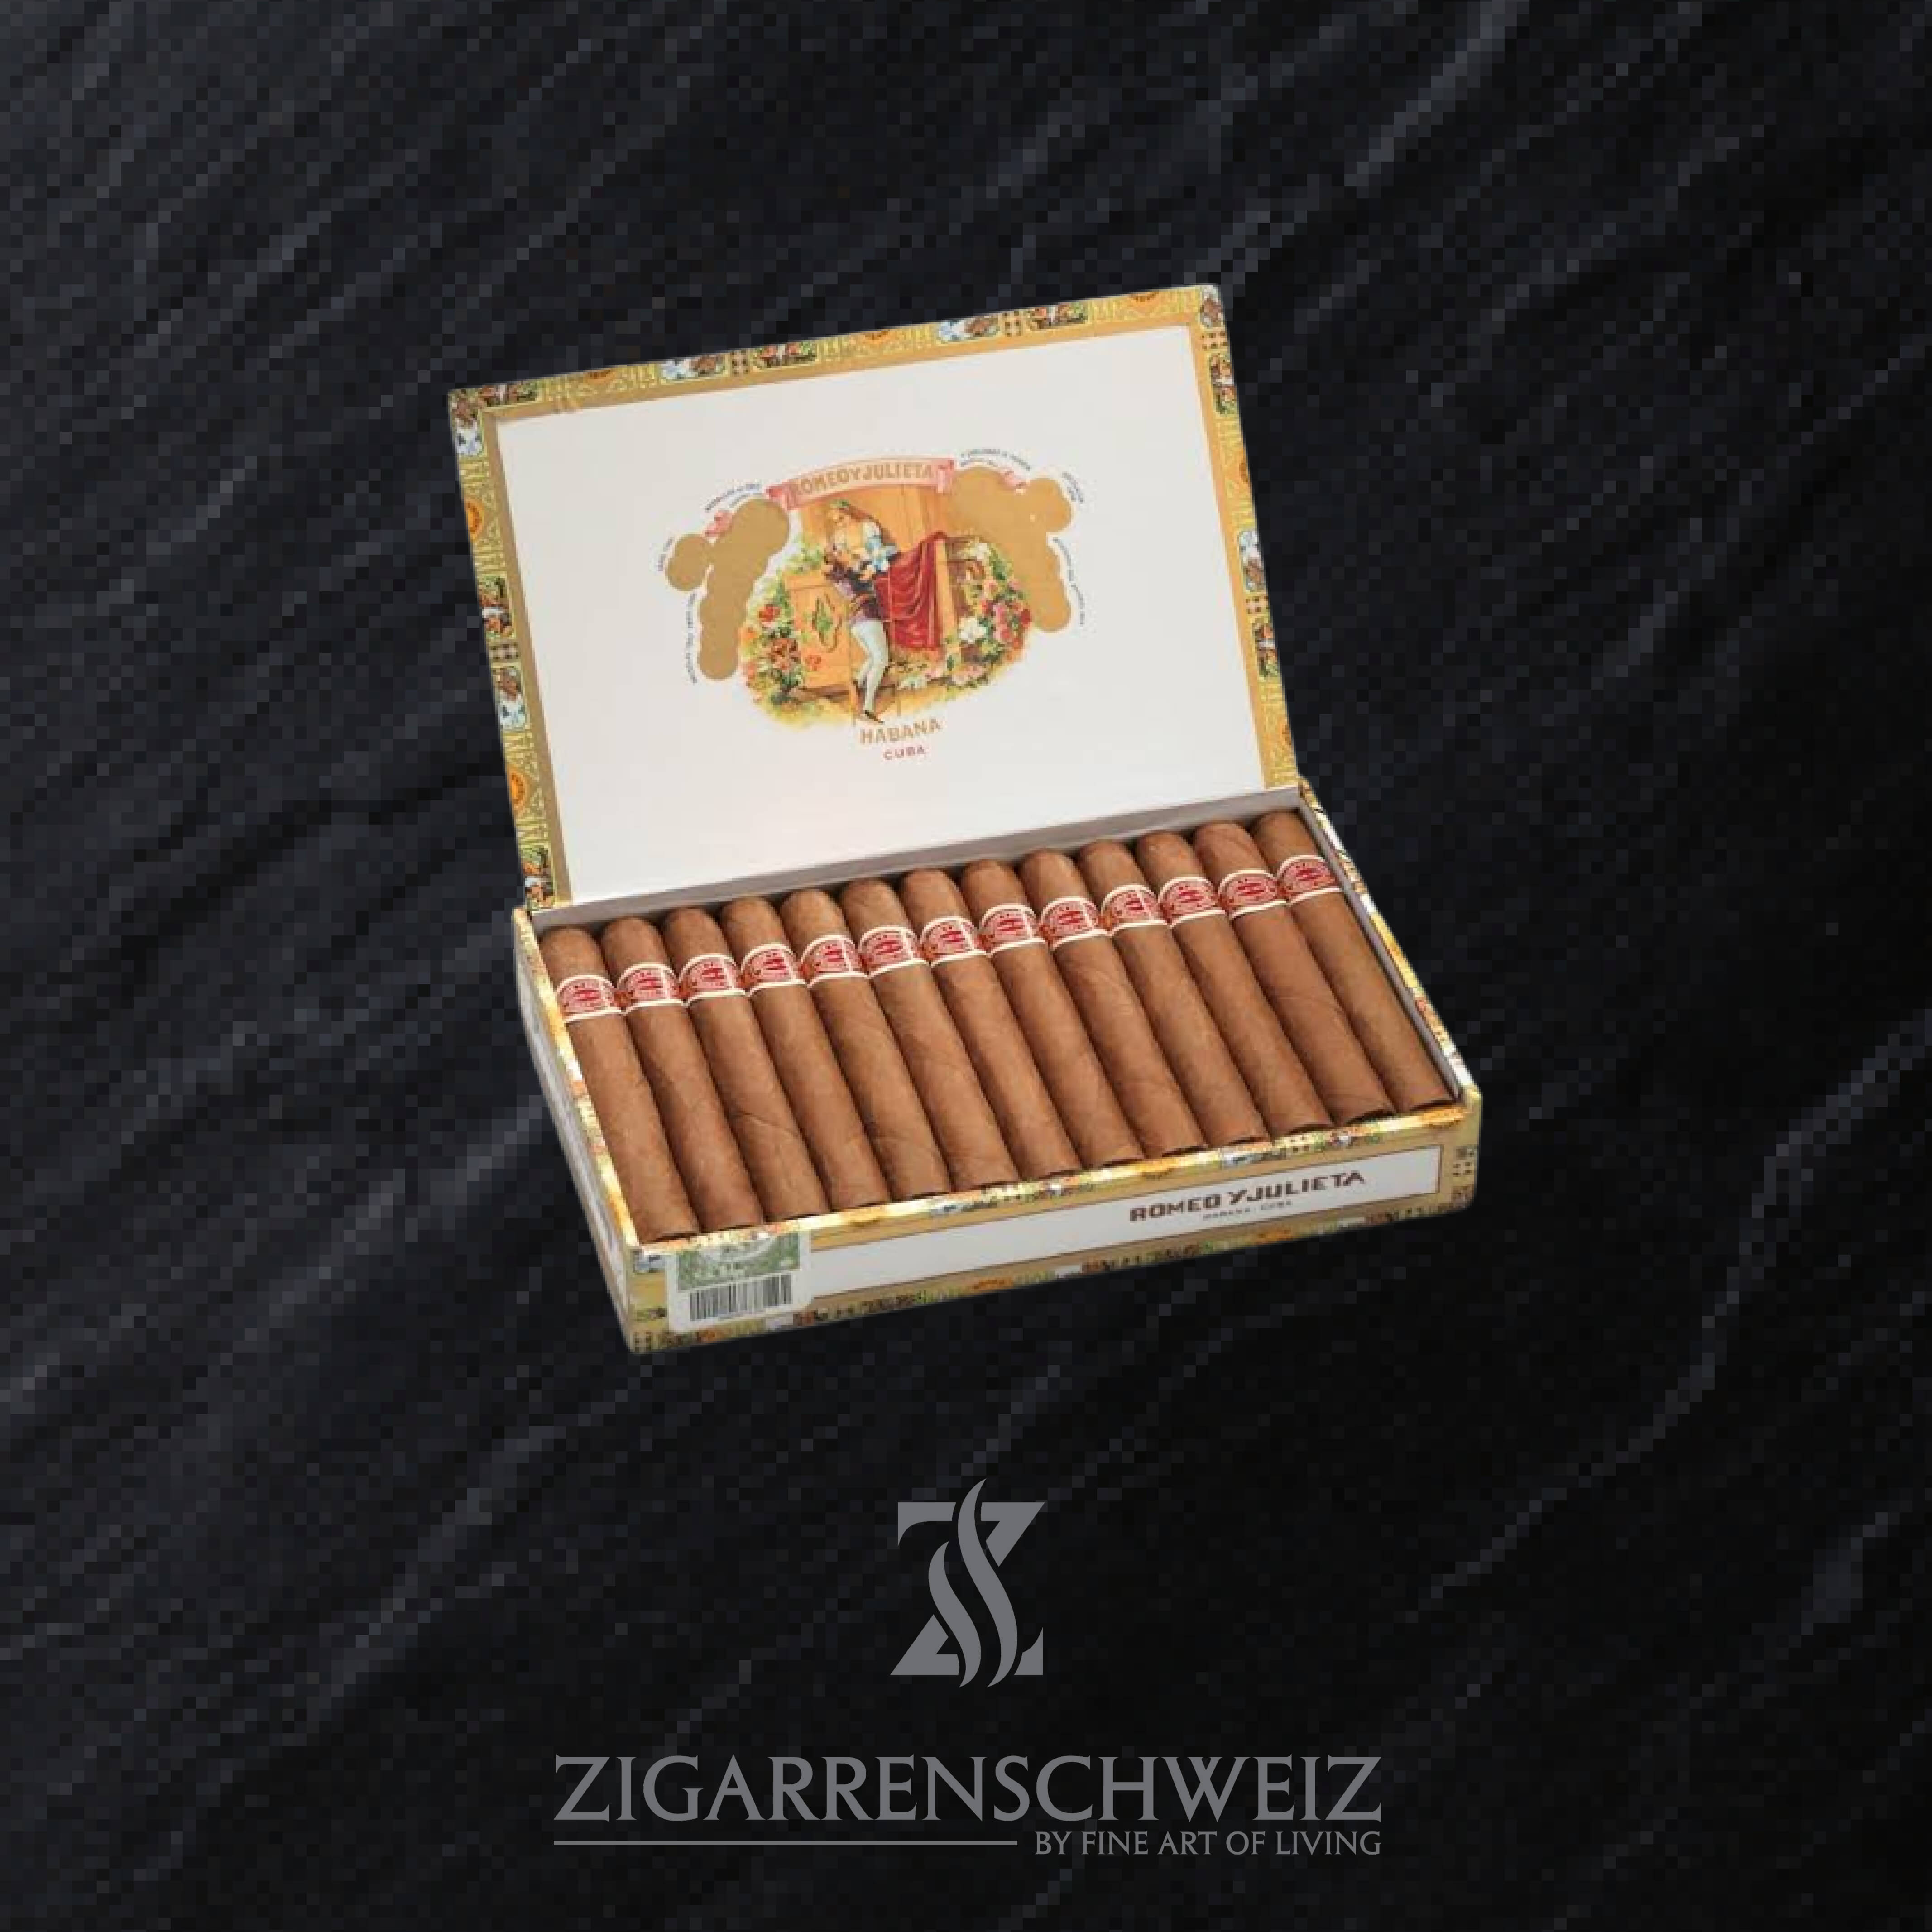 25er Kiste Romeo y Julieta Romeo Mille Fleurs Zigarren aus Kuba